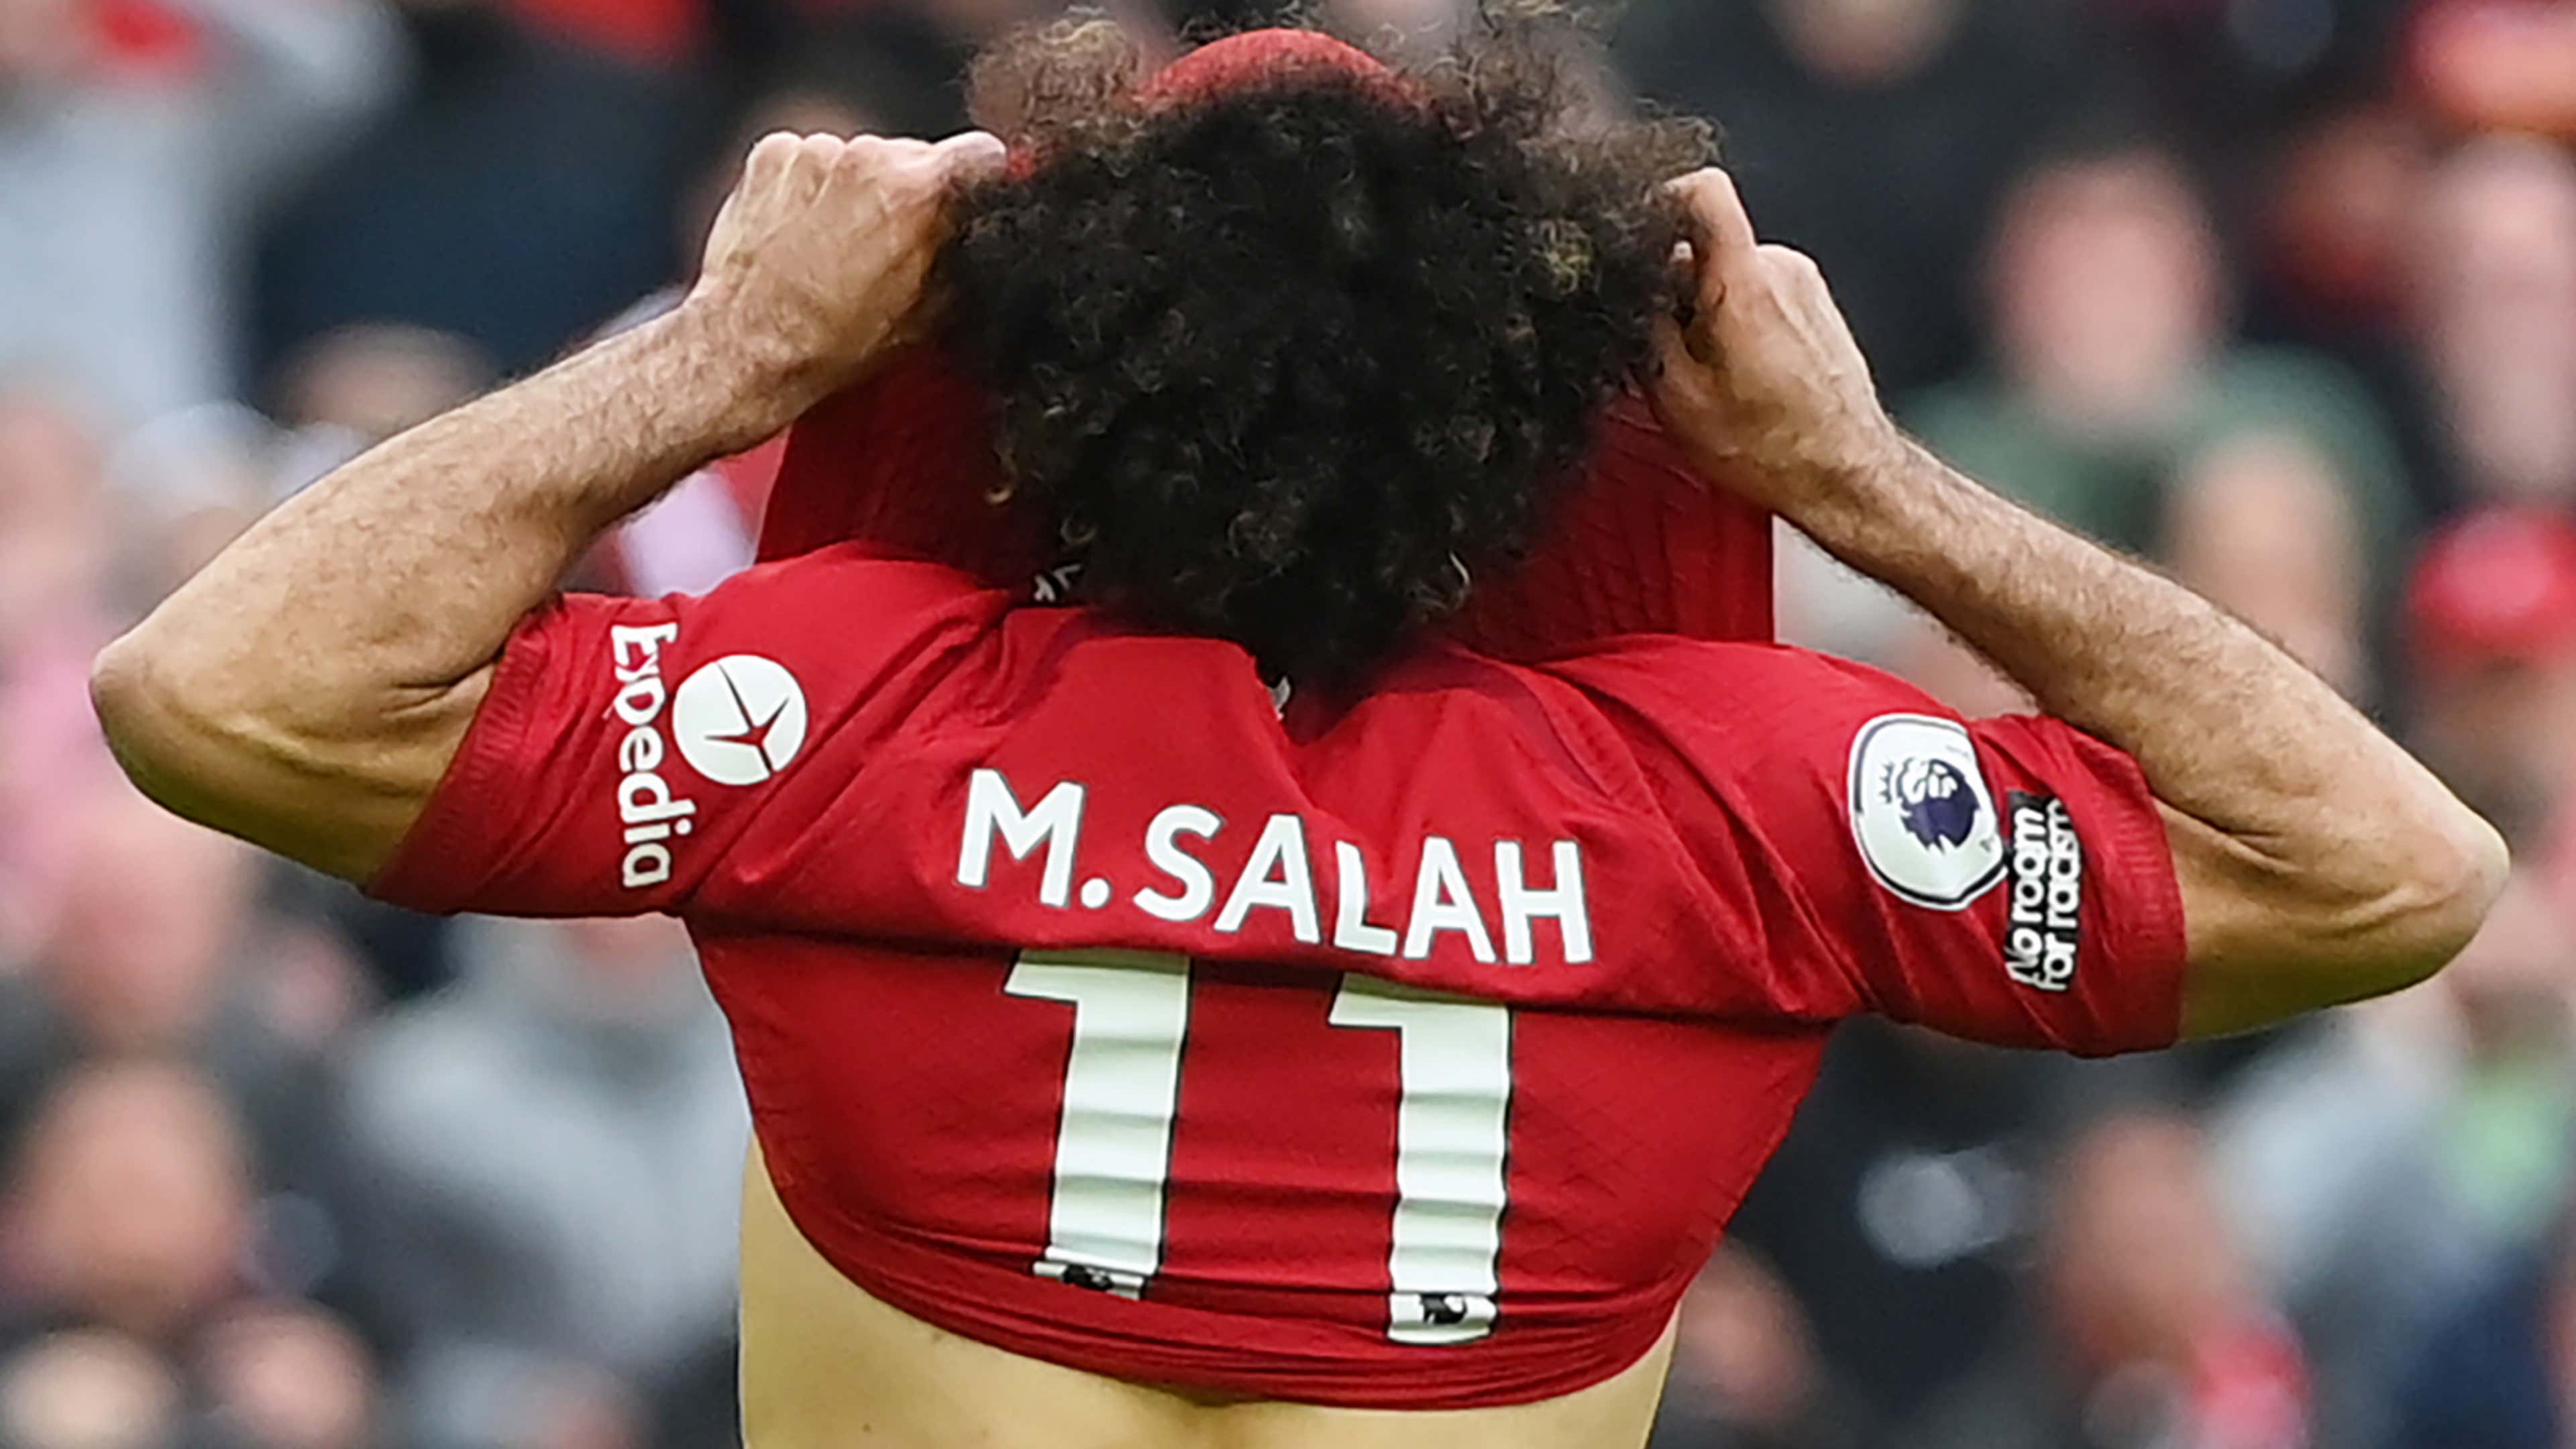 Liverpool 2018/19 Third Shirt With M. Salah 11 - Size S